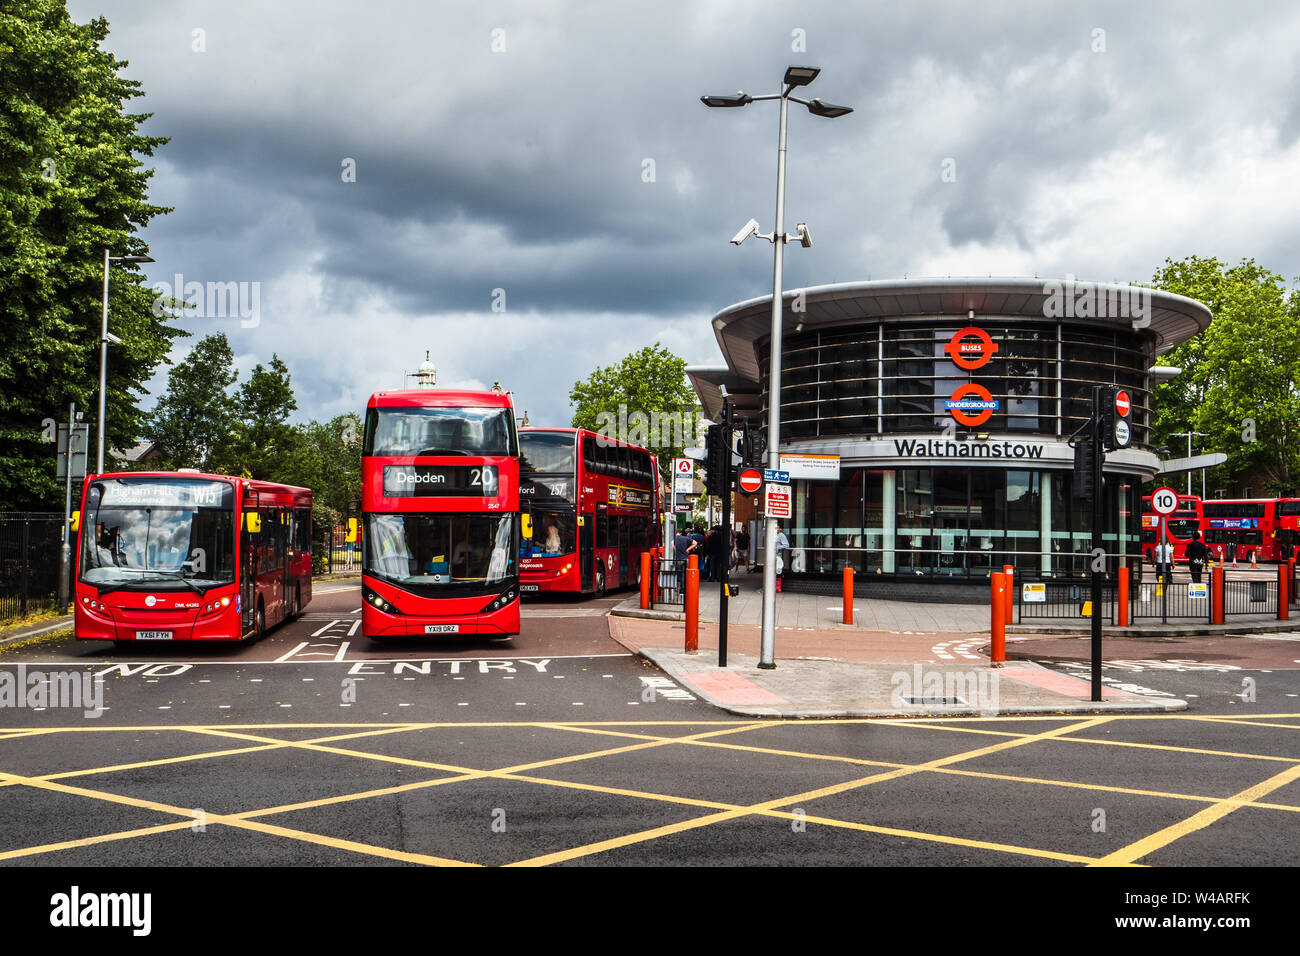 Walthamstow alla stazione degli autobus di Londra - Aperto nel 2005, è la terza più trafficata Stazione autobus di Londra, architetti RPS Group. Foto Stock